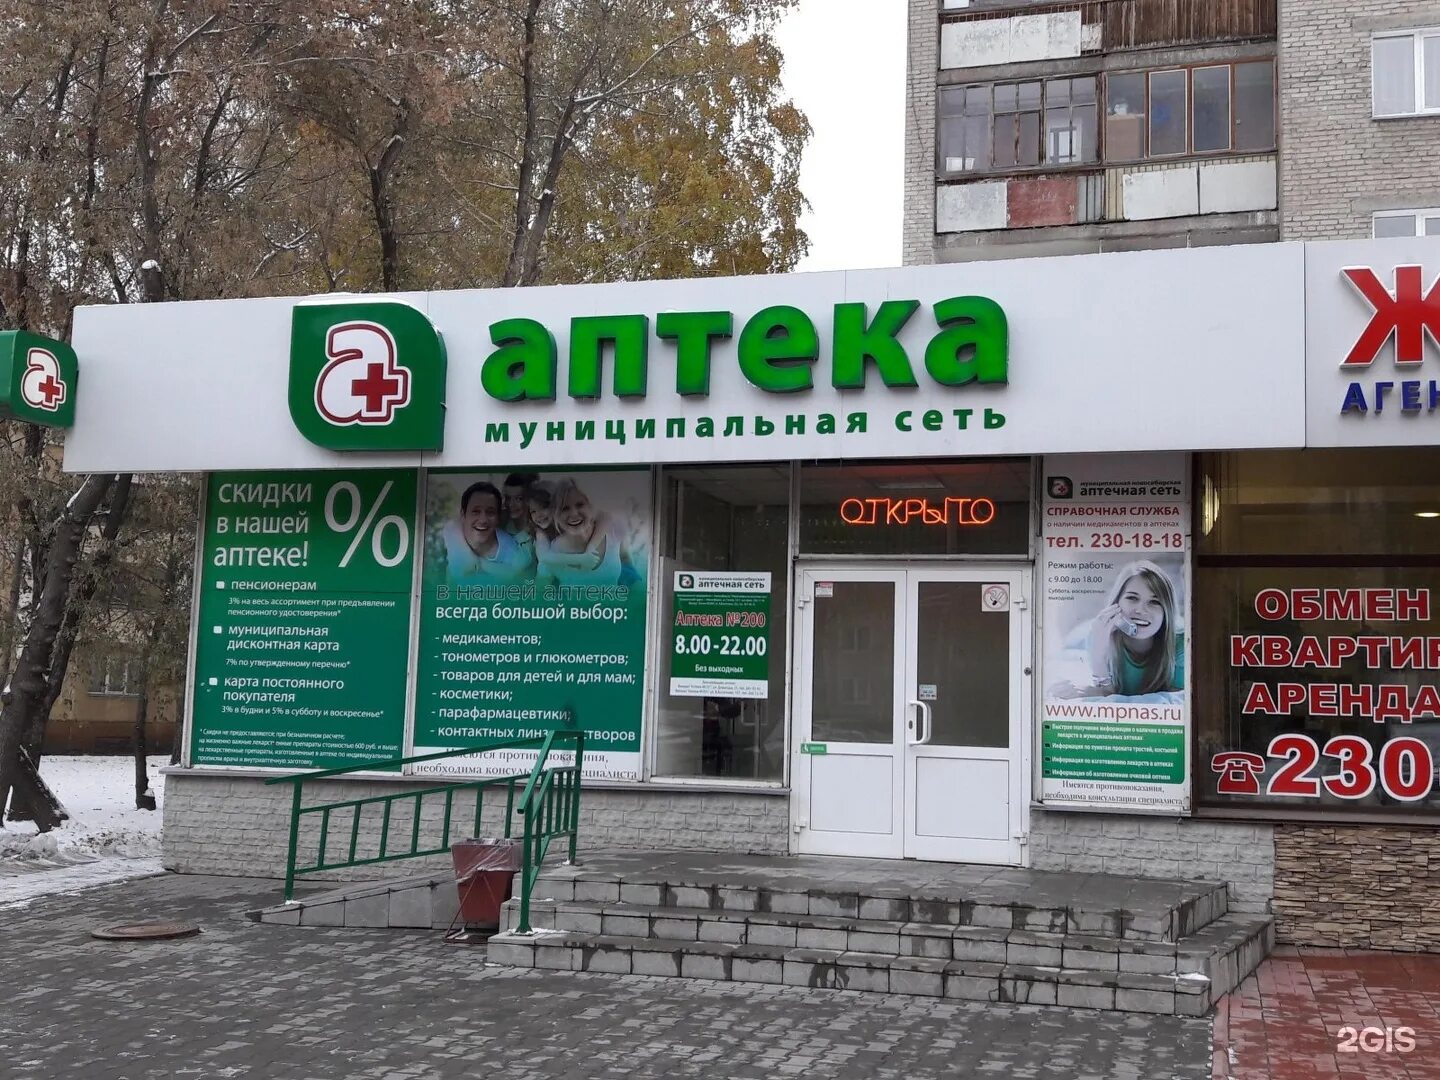 Муниципальная аптека. Аптеки Новосибирска. Новосибирская аптечная сеть. Китайская аптека в Новосибирске.